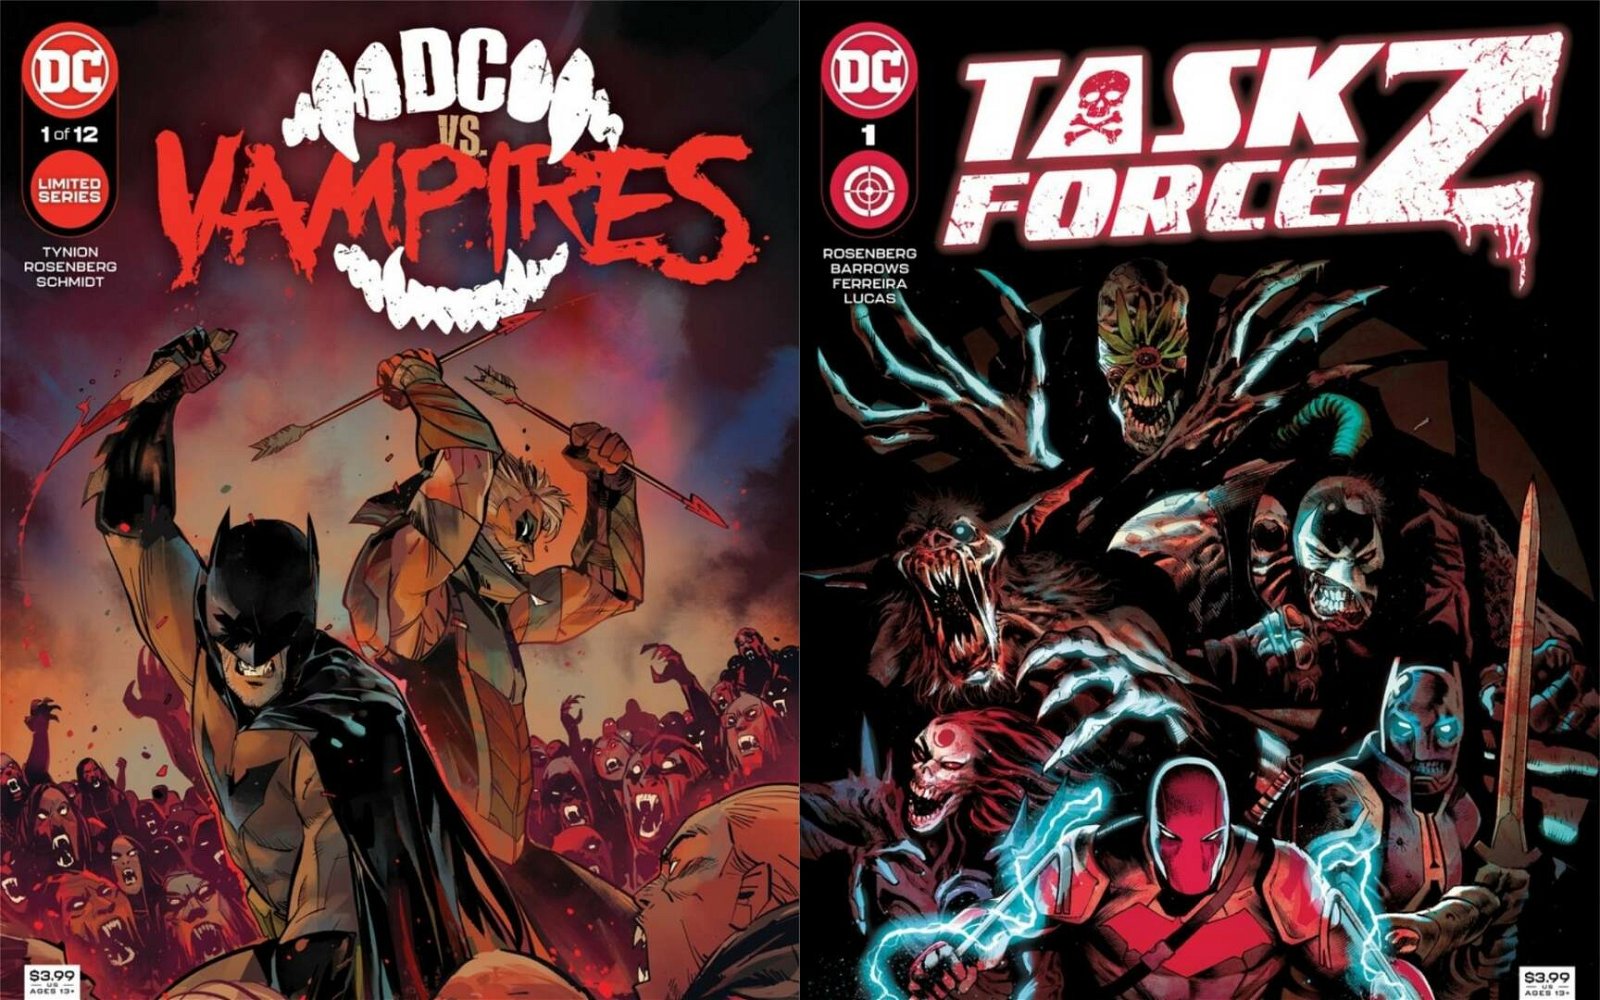 Immagine di DC Comics ha annunciato due nuovi terrificanti fumetti